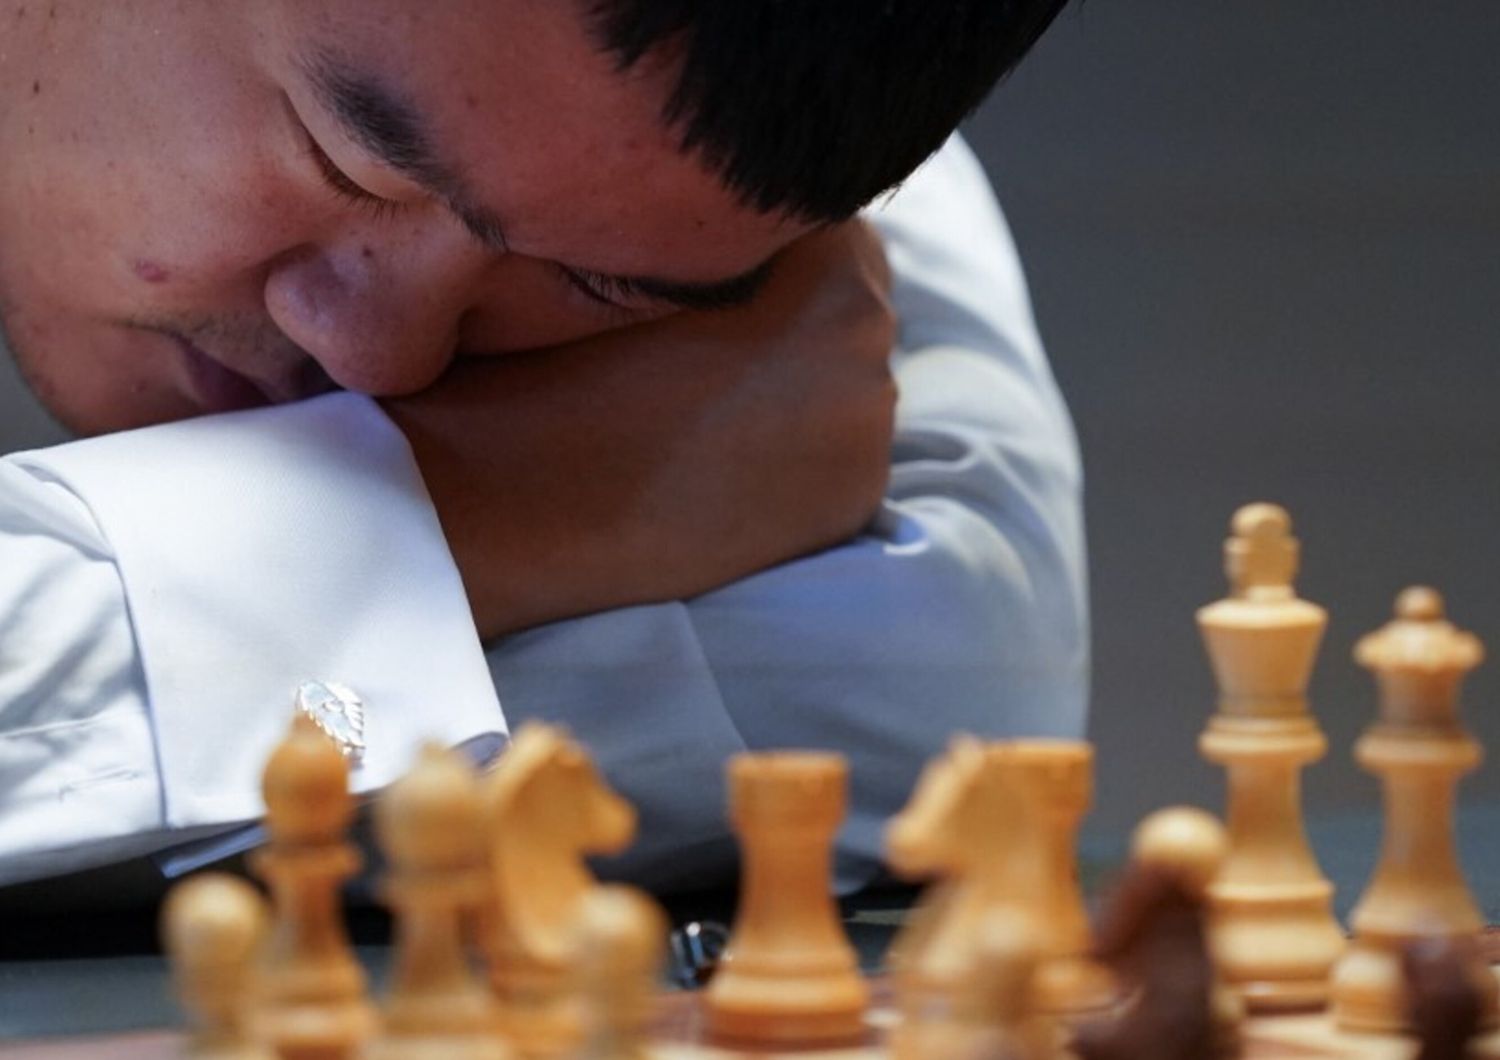 Ding Liren, campione del mondo di scacchi